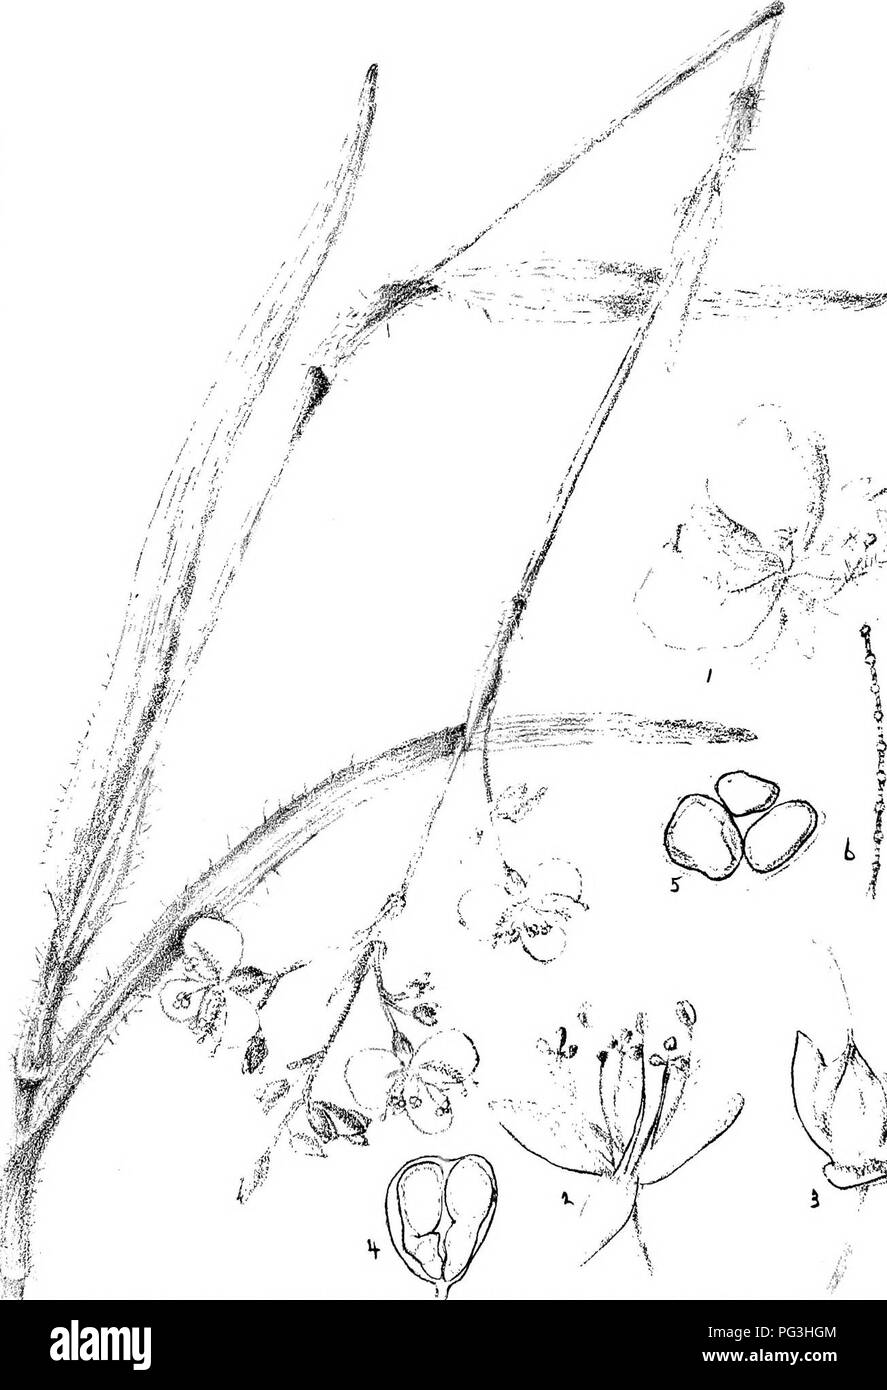 . Natal Pflanzen: Beschreibungen und Abbildungen von Natal einheimischen Pflanzen, mit Hinweisen auf ihre Verteilung, wirtschaftlichen Wert, einheimischen Namen, &Amp; C., / von J. Medley Holz und Maurice S. Evans. Unter der Schirmherrschaft von Natal Regierung und Durban Botanischen Gesellschaft veröffentlicht. Botanik. Platte 294.;-/r&gt;^&gt; "Ich^&lt;{^f "rs '.'/- ich^'-w, *-*---. ^-^^'' tf^o^. Fe; v f;. Bitte beachten Sie, dass diese Bilder sind von der gescannten Seite Bilder, die digital für die Lesbarkeit verbessert haben mögen - Färbung und Aussehen dieser Abbildungen können nicht perfekt dem Original ähneln. extrahiert. Holz, John medl Stockfoto